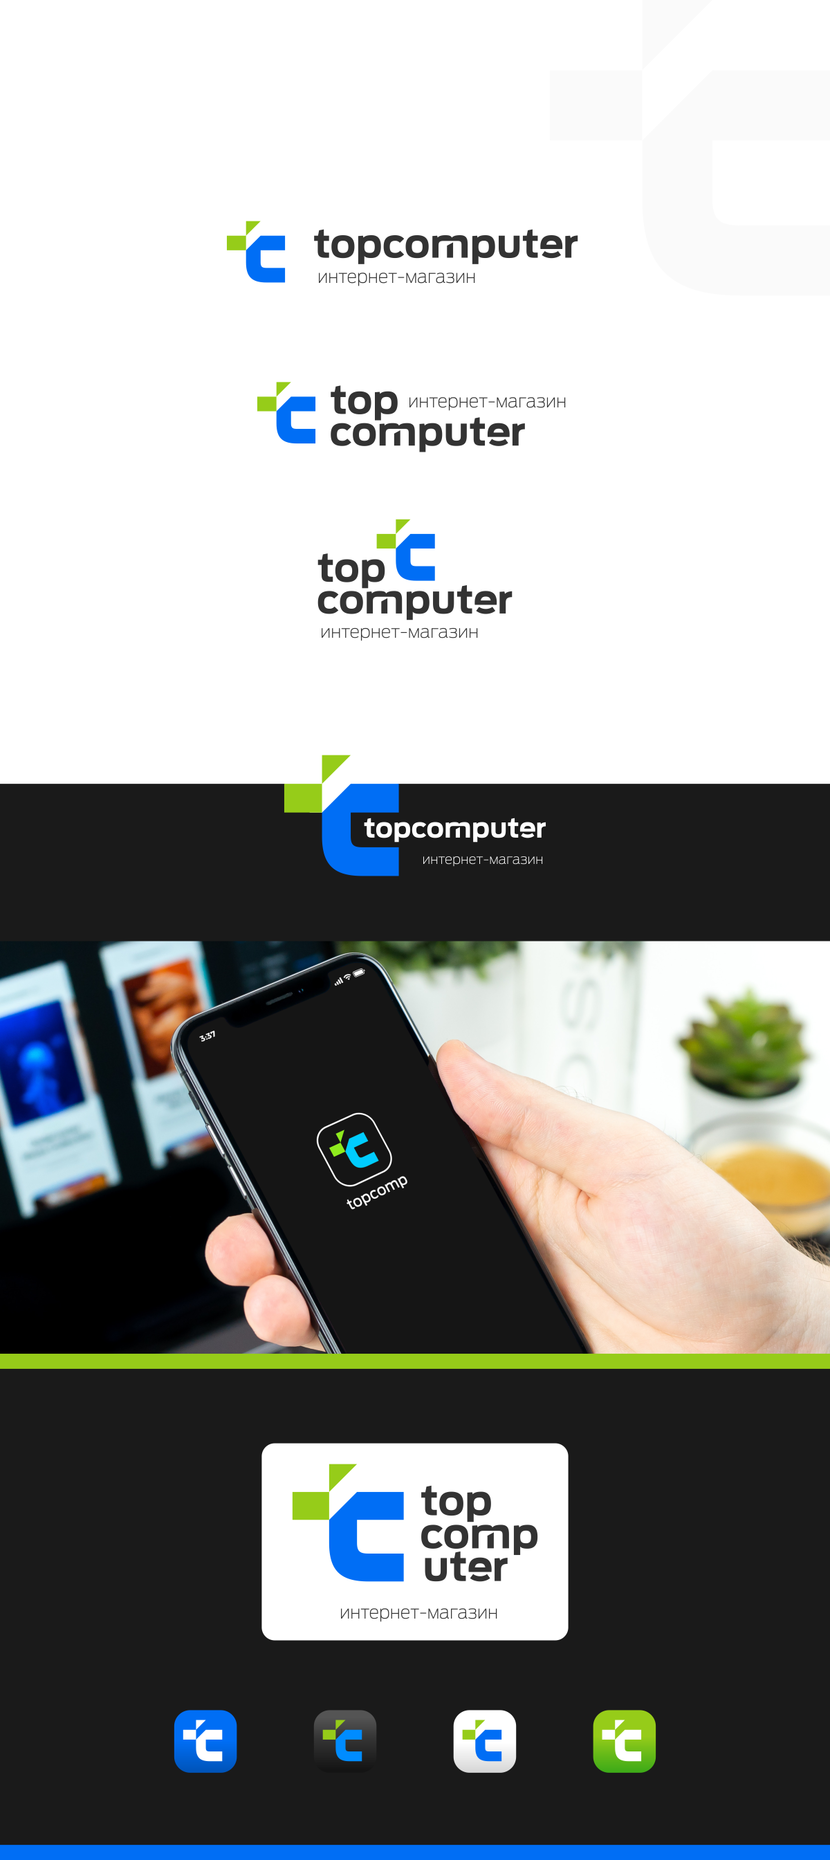 Topcomp - Создание логотипа для интернет-магазина «Топкомпьютер».